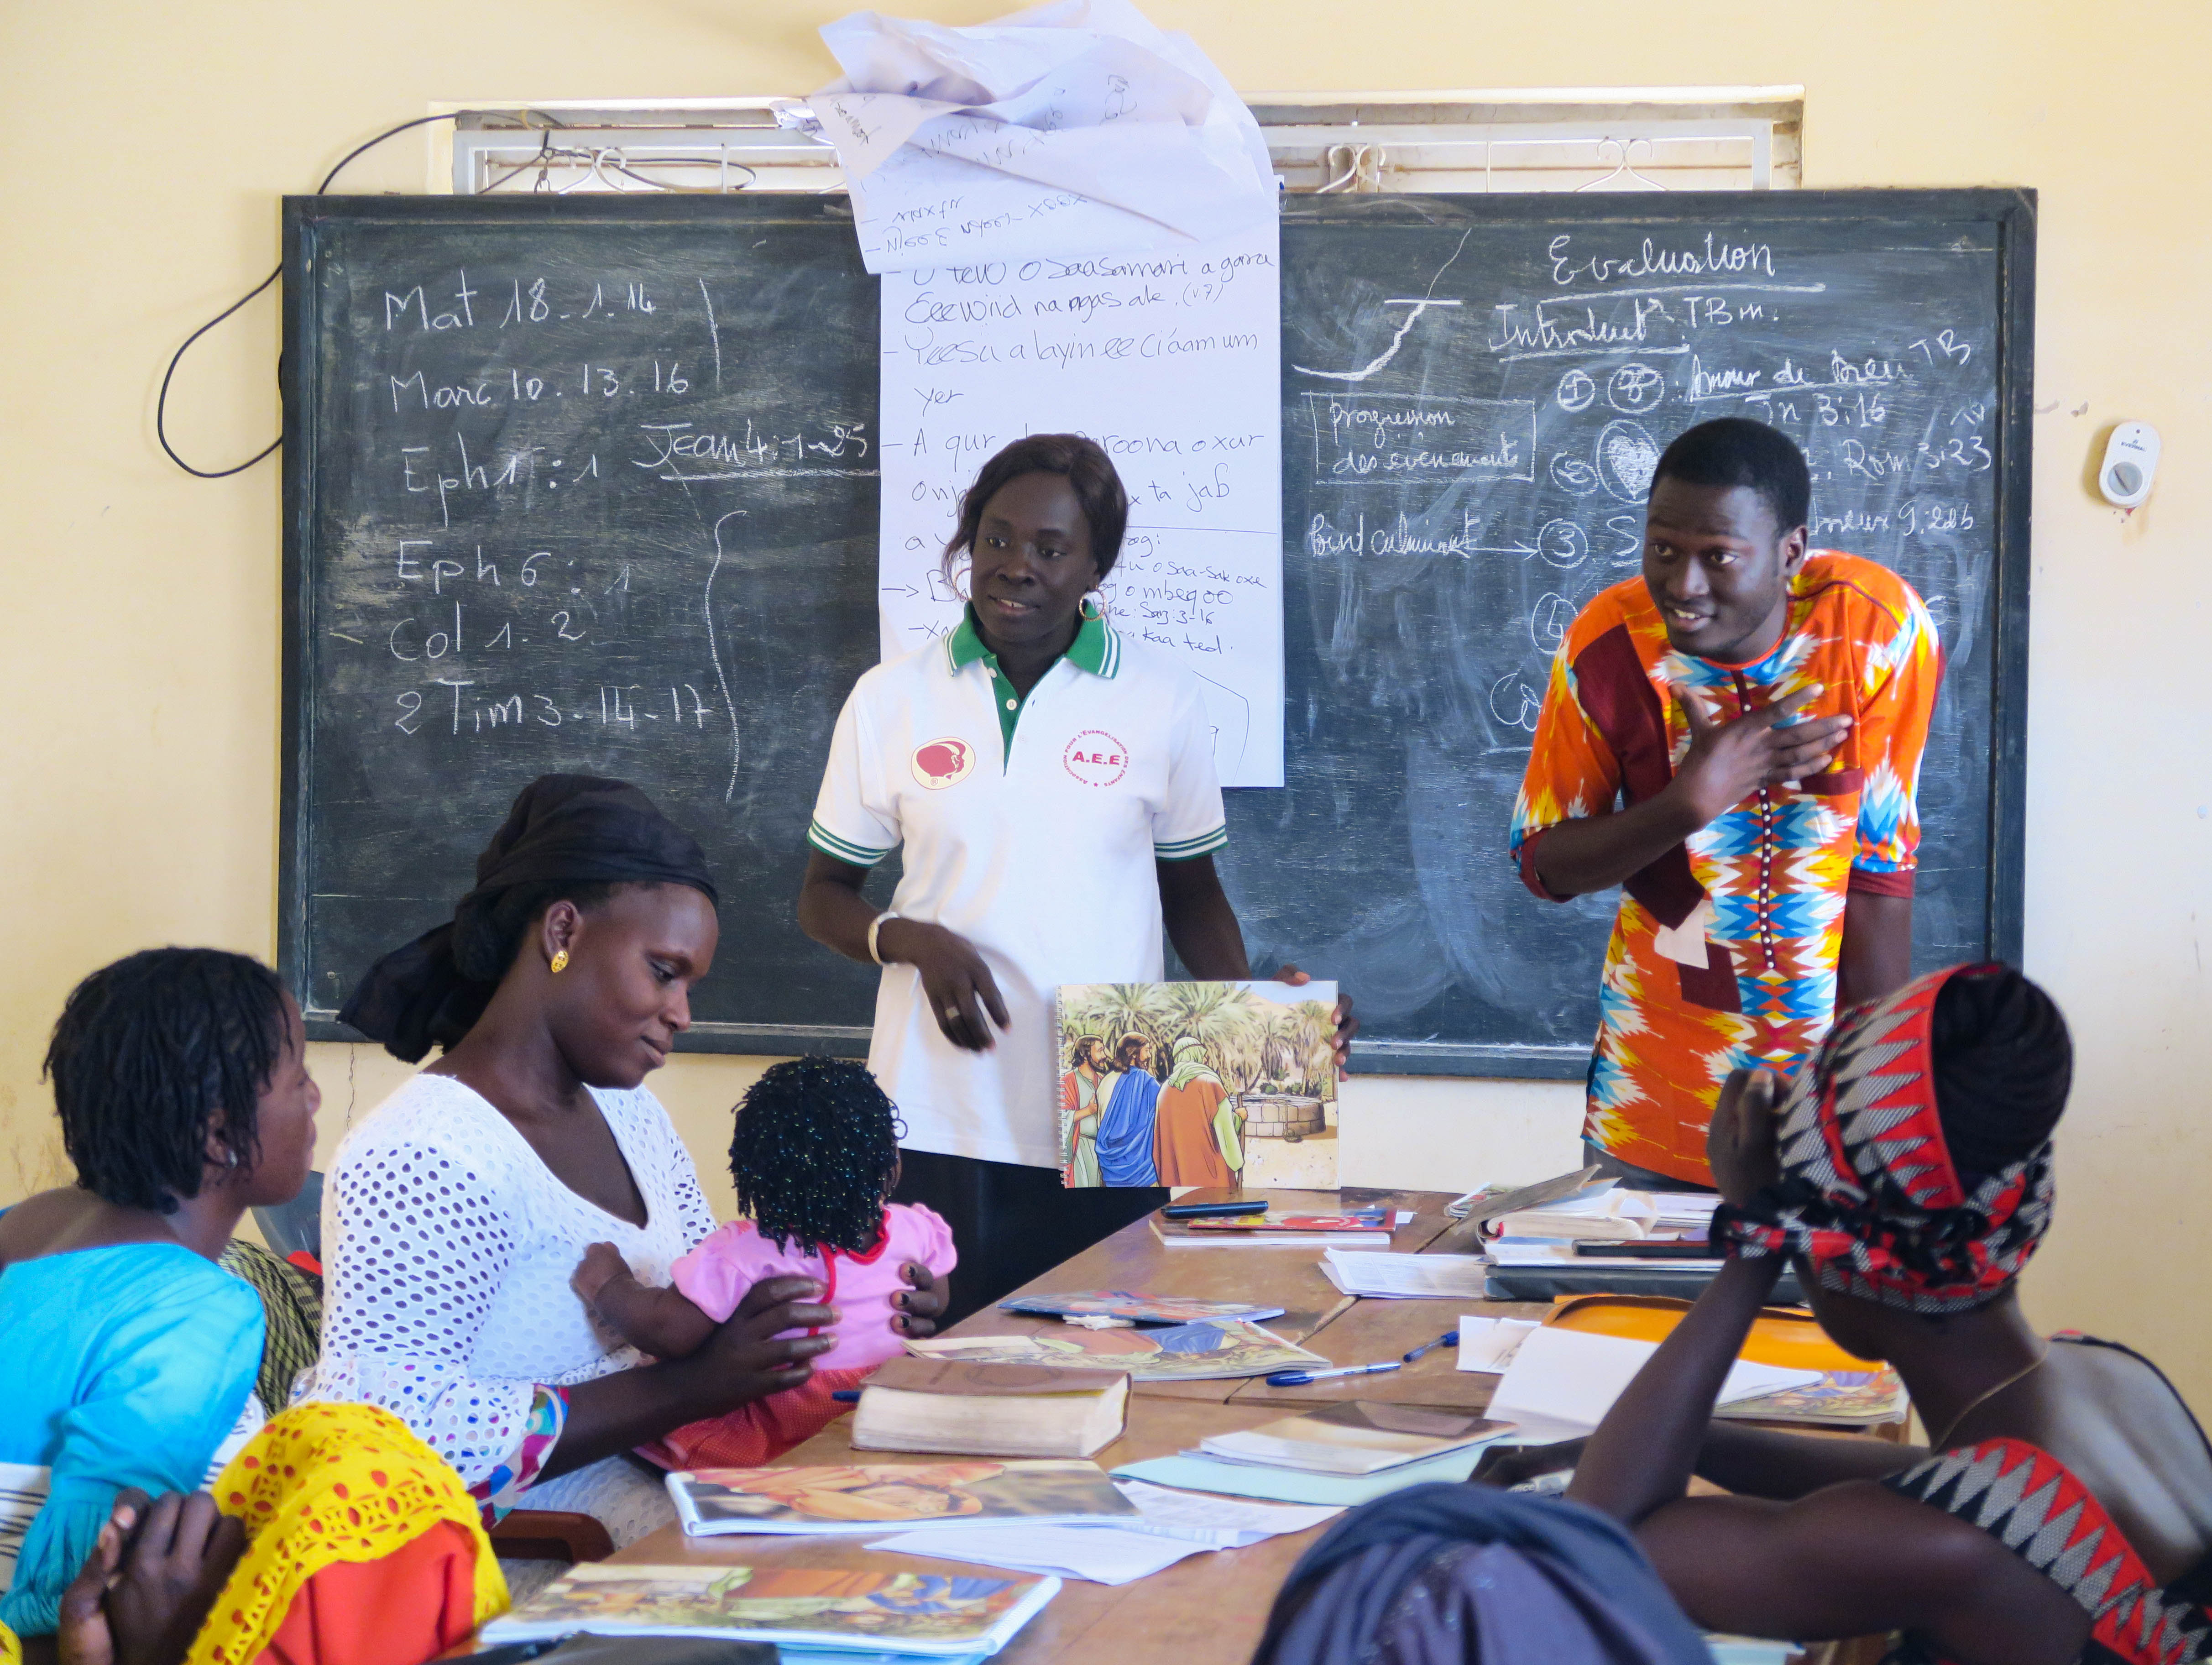 Senegalissa toimiva pyhäkoulunopettajien seminaari. Kuvassa aikuisia ja lapsia valoisassa luokkahuoneessa.